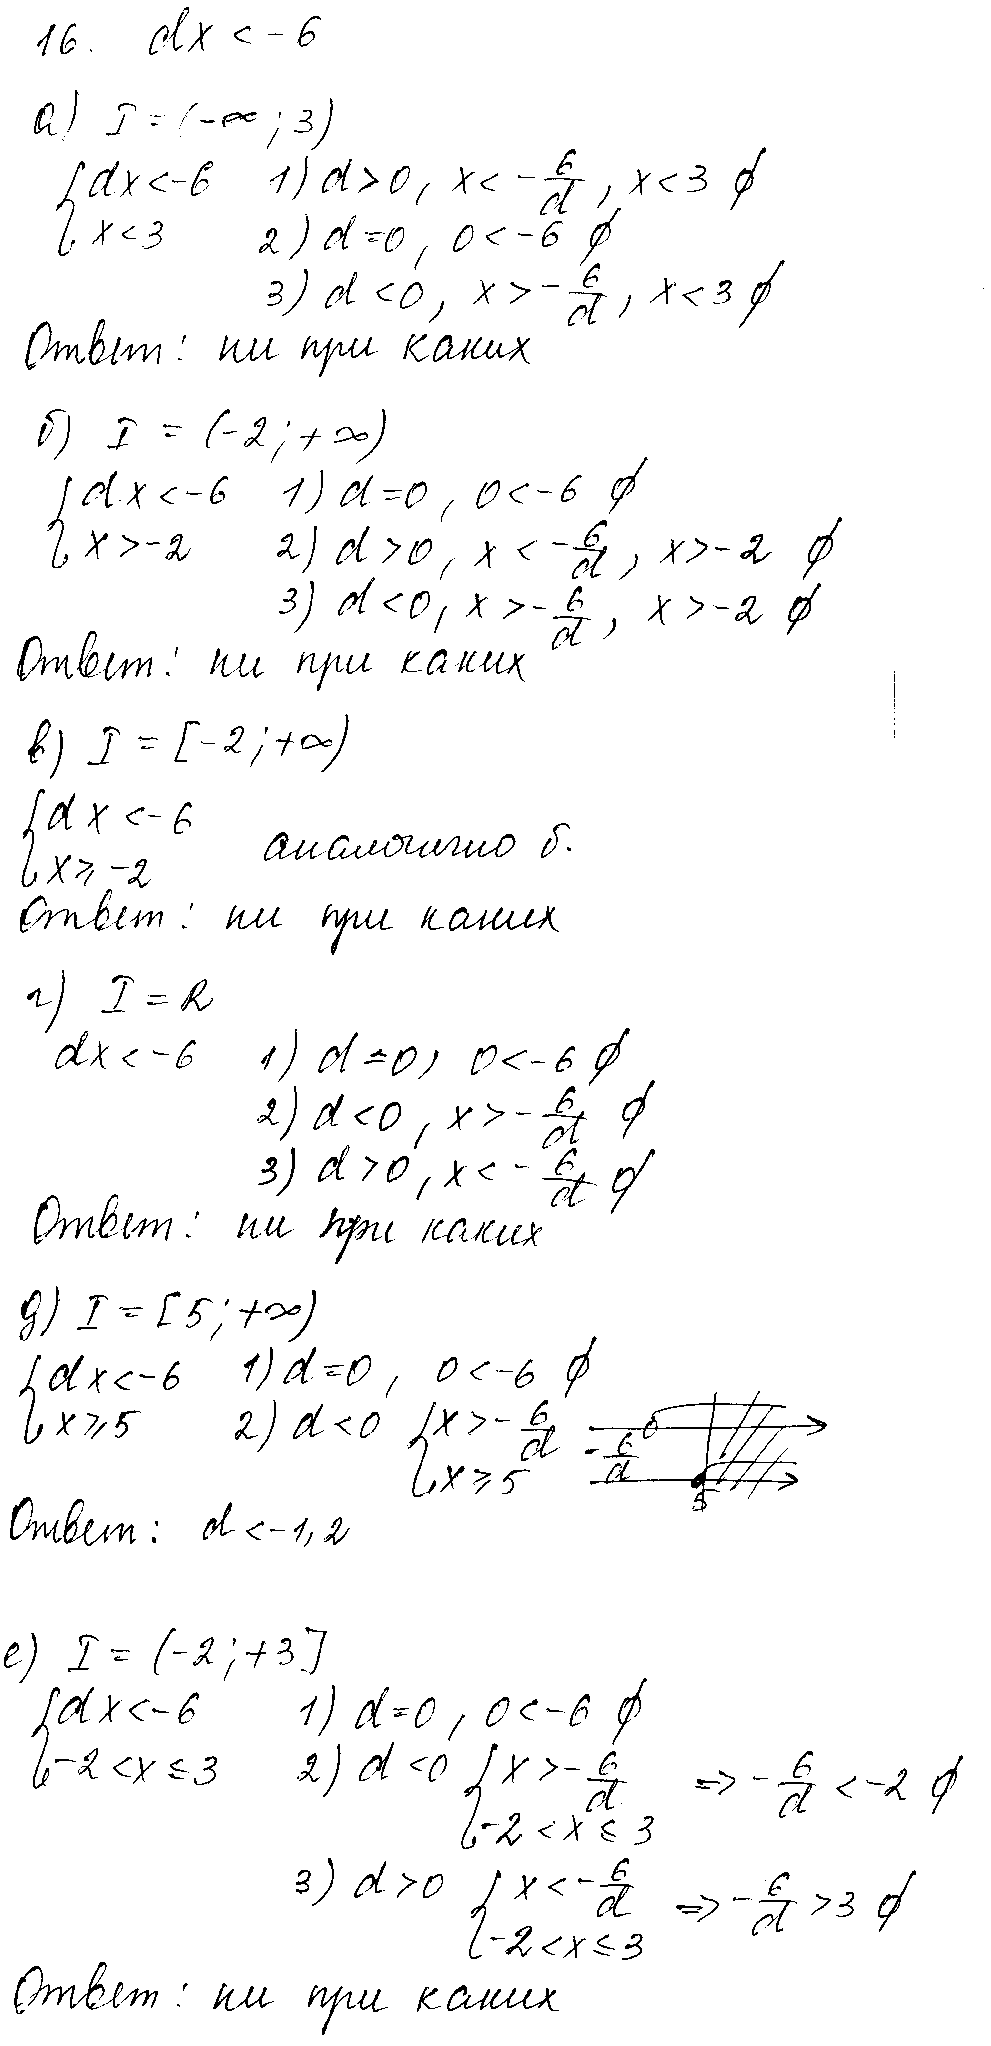 ГДЗ Алгебра 8 класс - 16